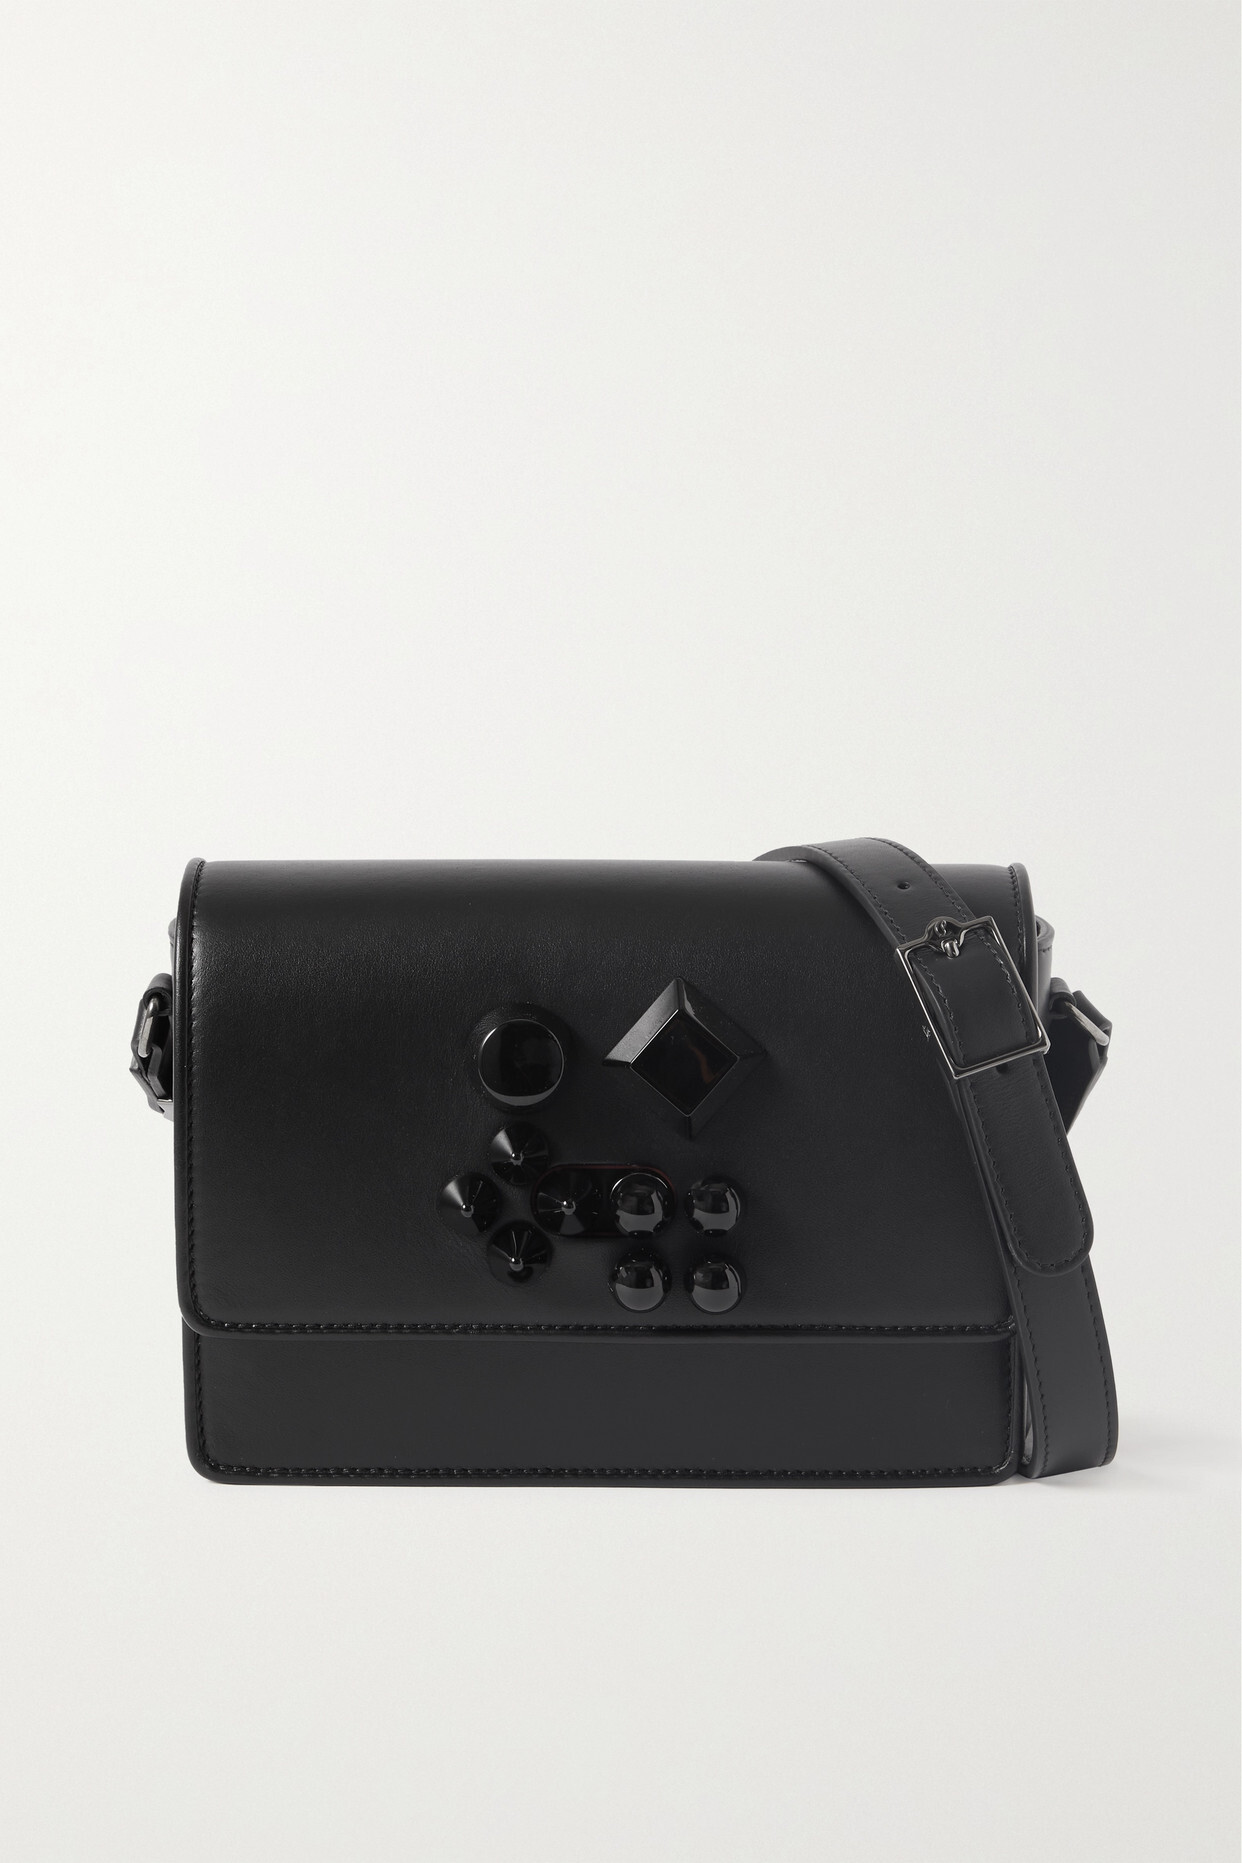 Christian Louboutin - Carasky Embellished Leather Shoulder Bag - Black